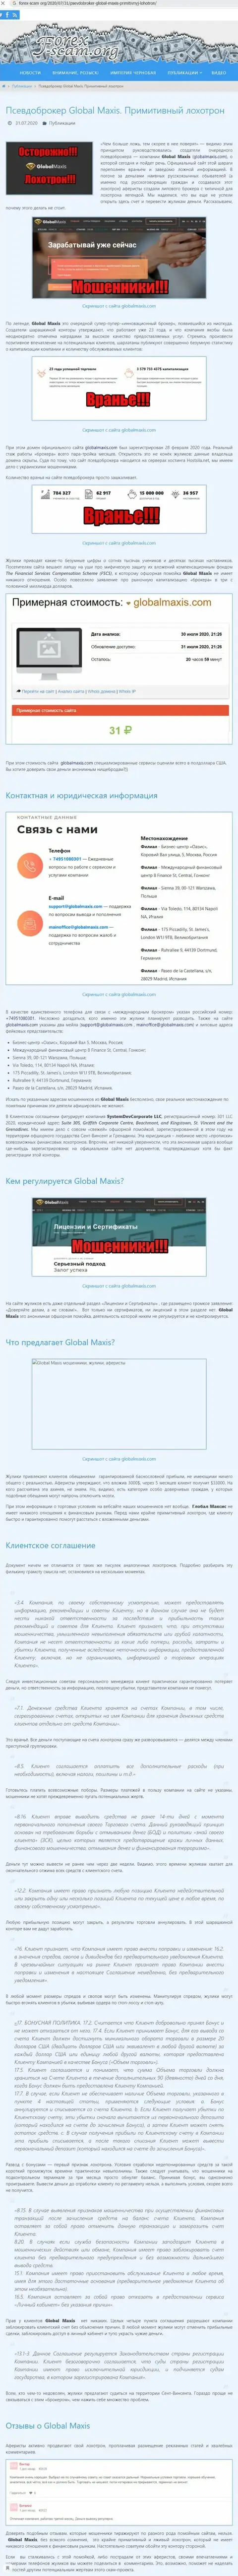 ЖУЛЬНИЧЕСТВО, ЛОХОТРОН и ВРАНЬЕ - обзор манипуляций конторы Global Maxis